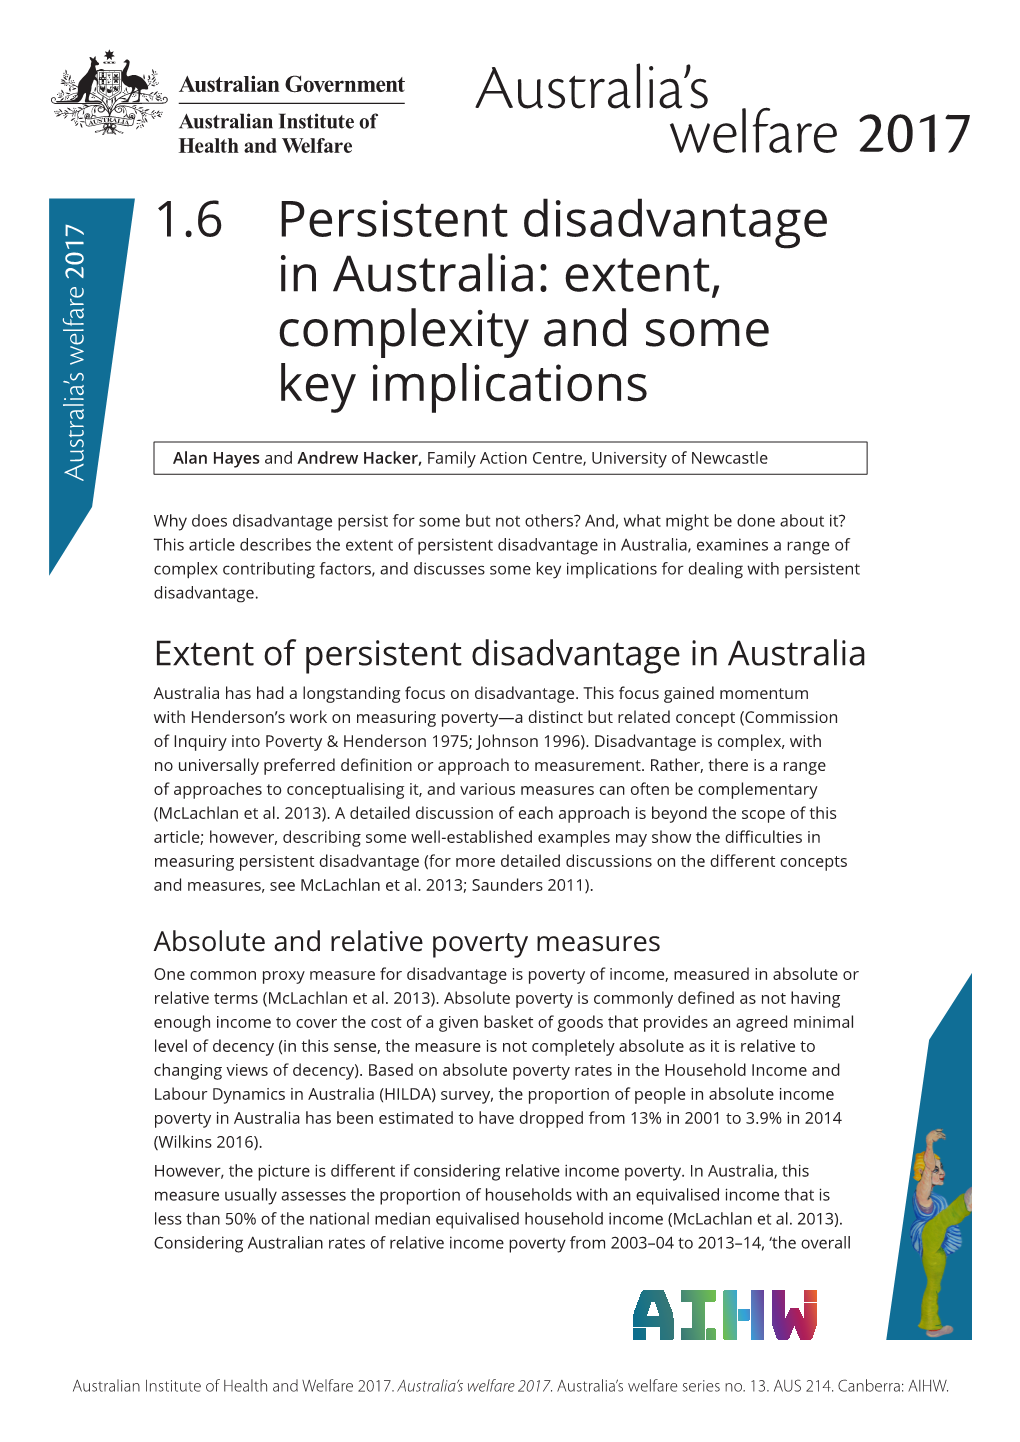 1.6 Persistent Disadvantage in Australia